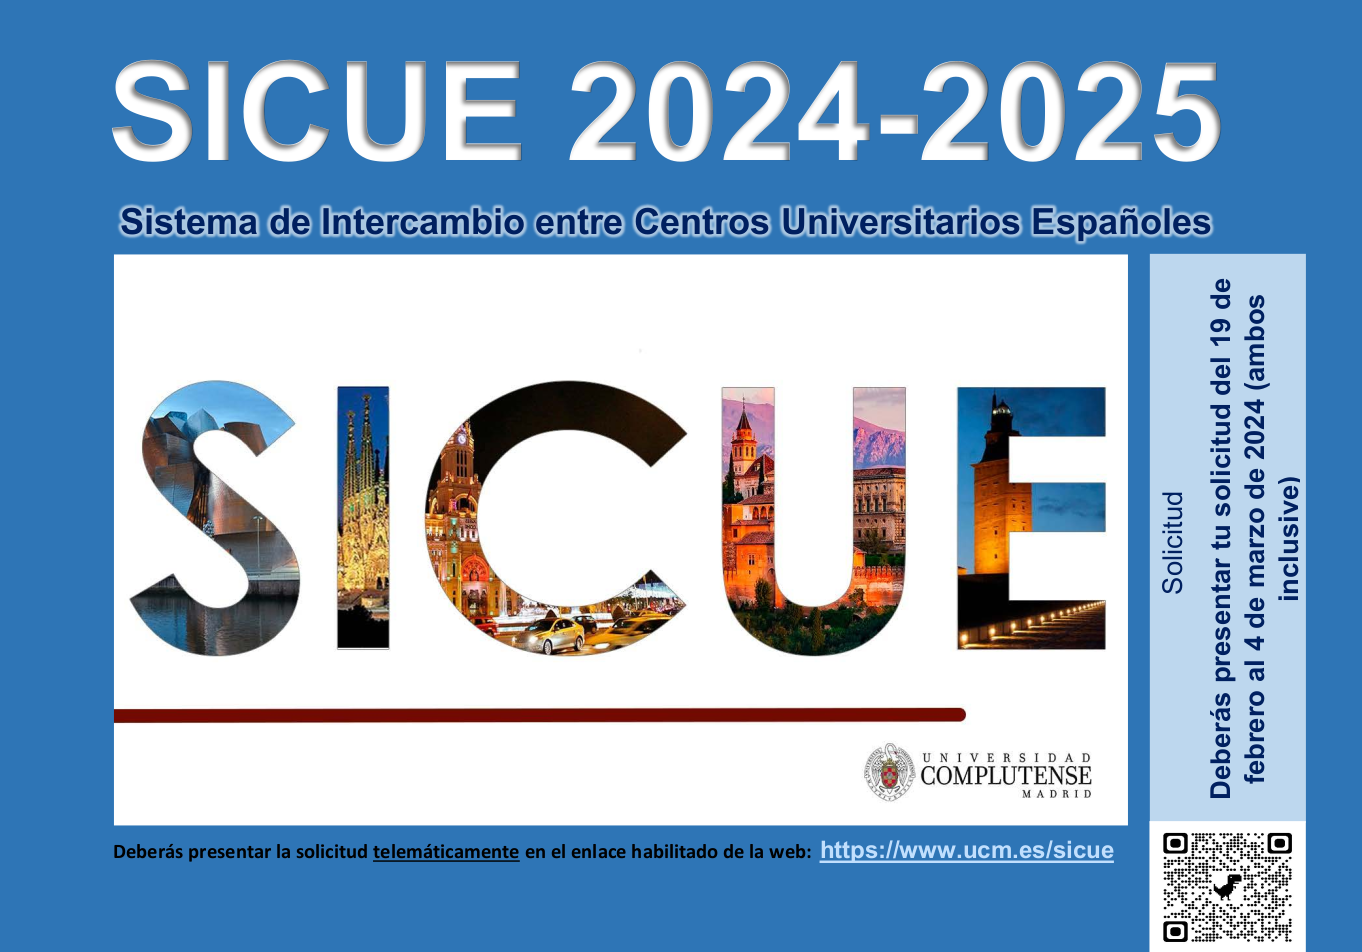 Sistema de Intercambio entre Centros Universitarios Españoles - SICUE 2024-2025